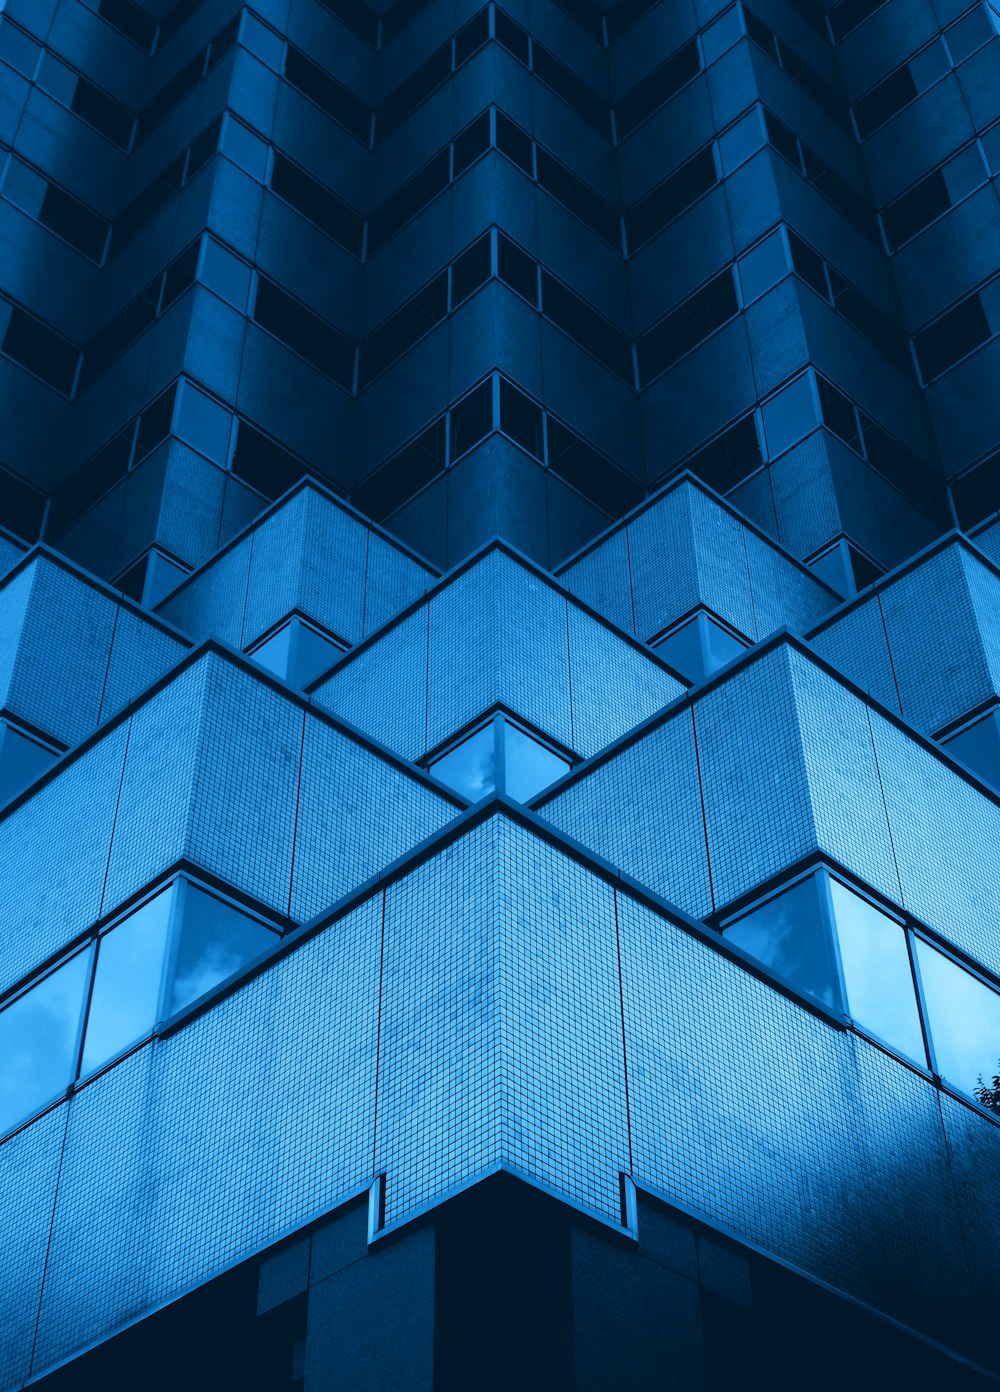 Edificio con paredes de vidrio azul y blanco